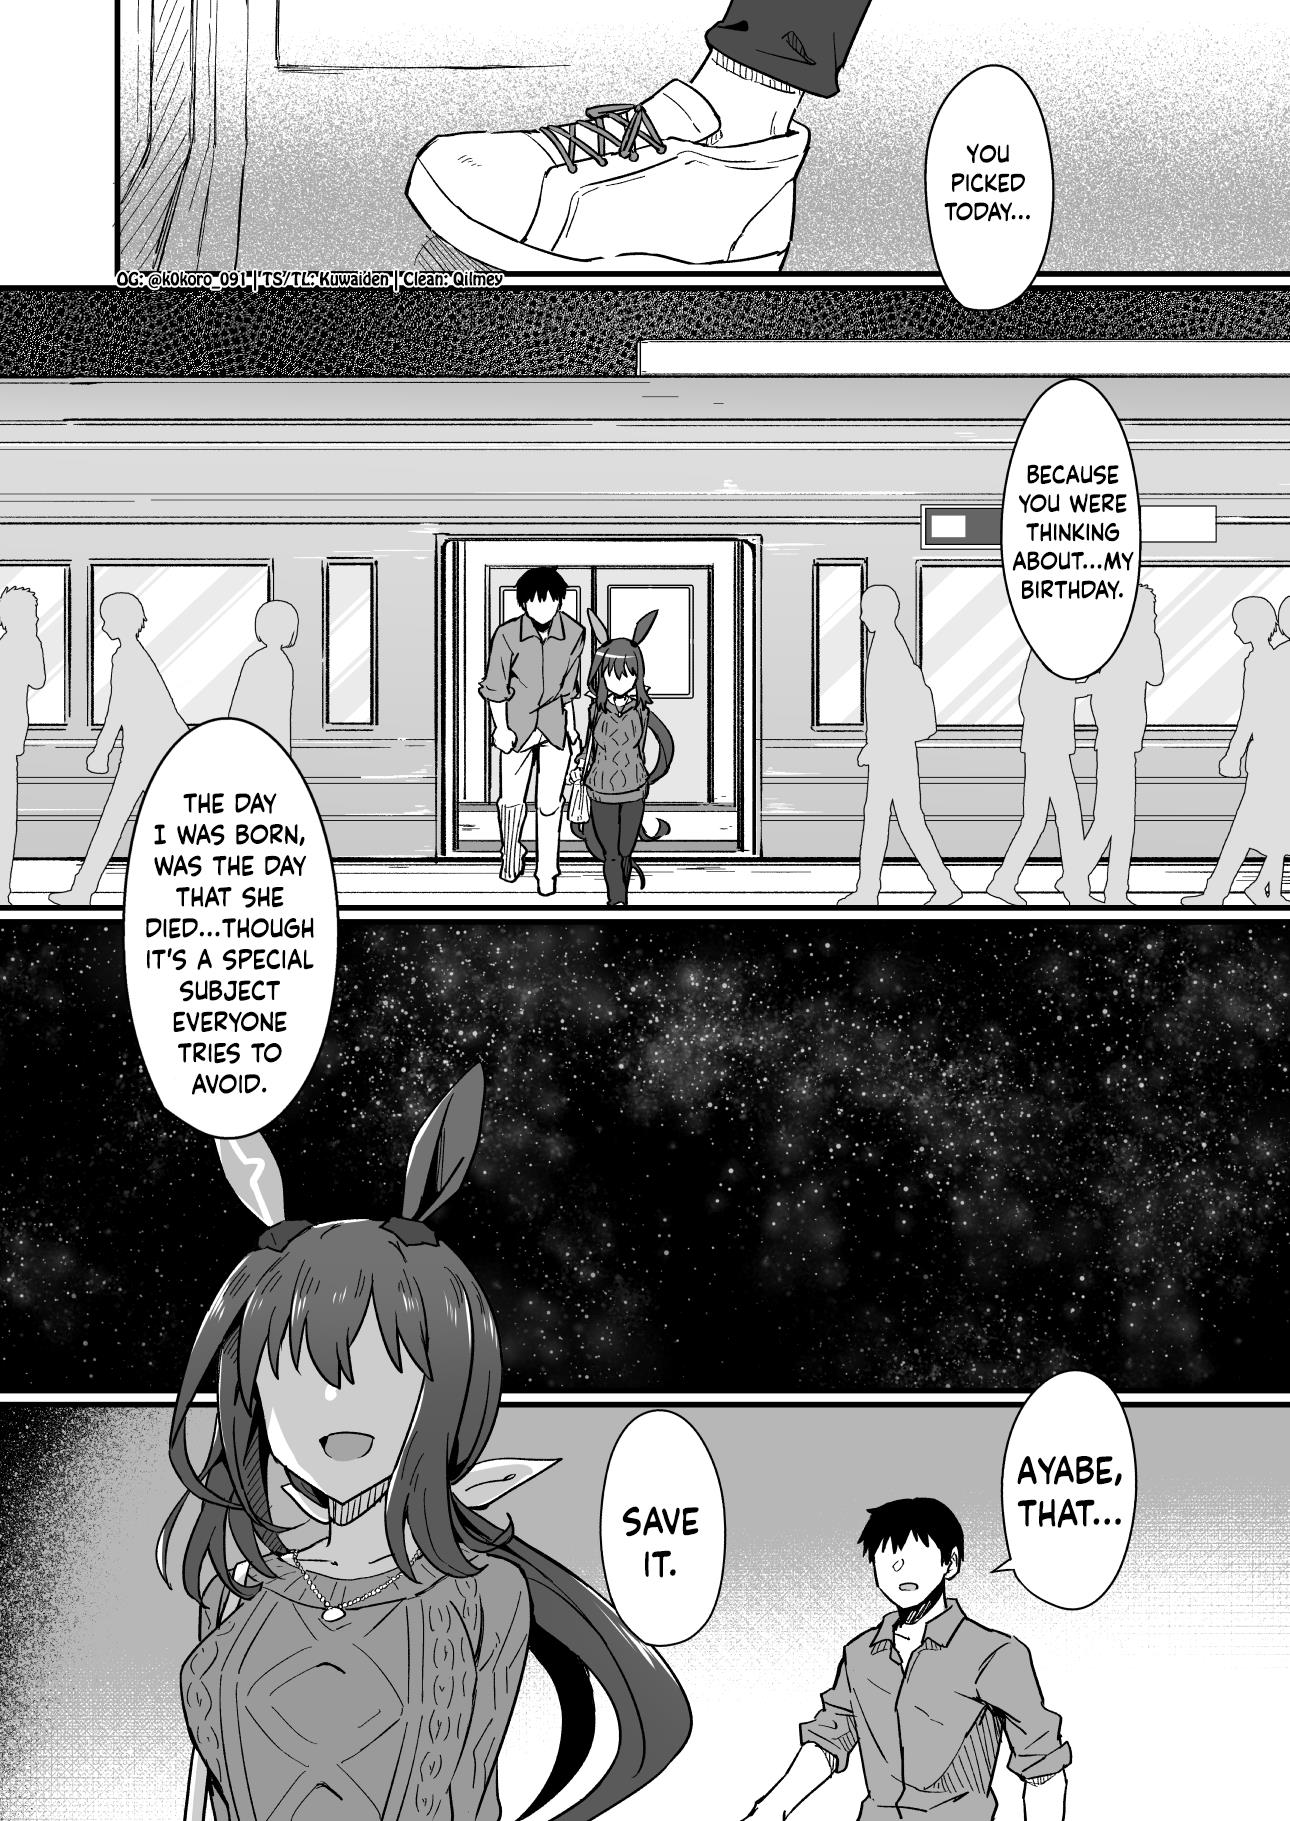 Kokoro-Sensei's Umamusume Shorts (Doujinshi) - Page 4